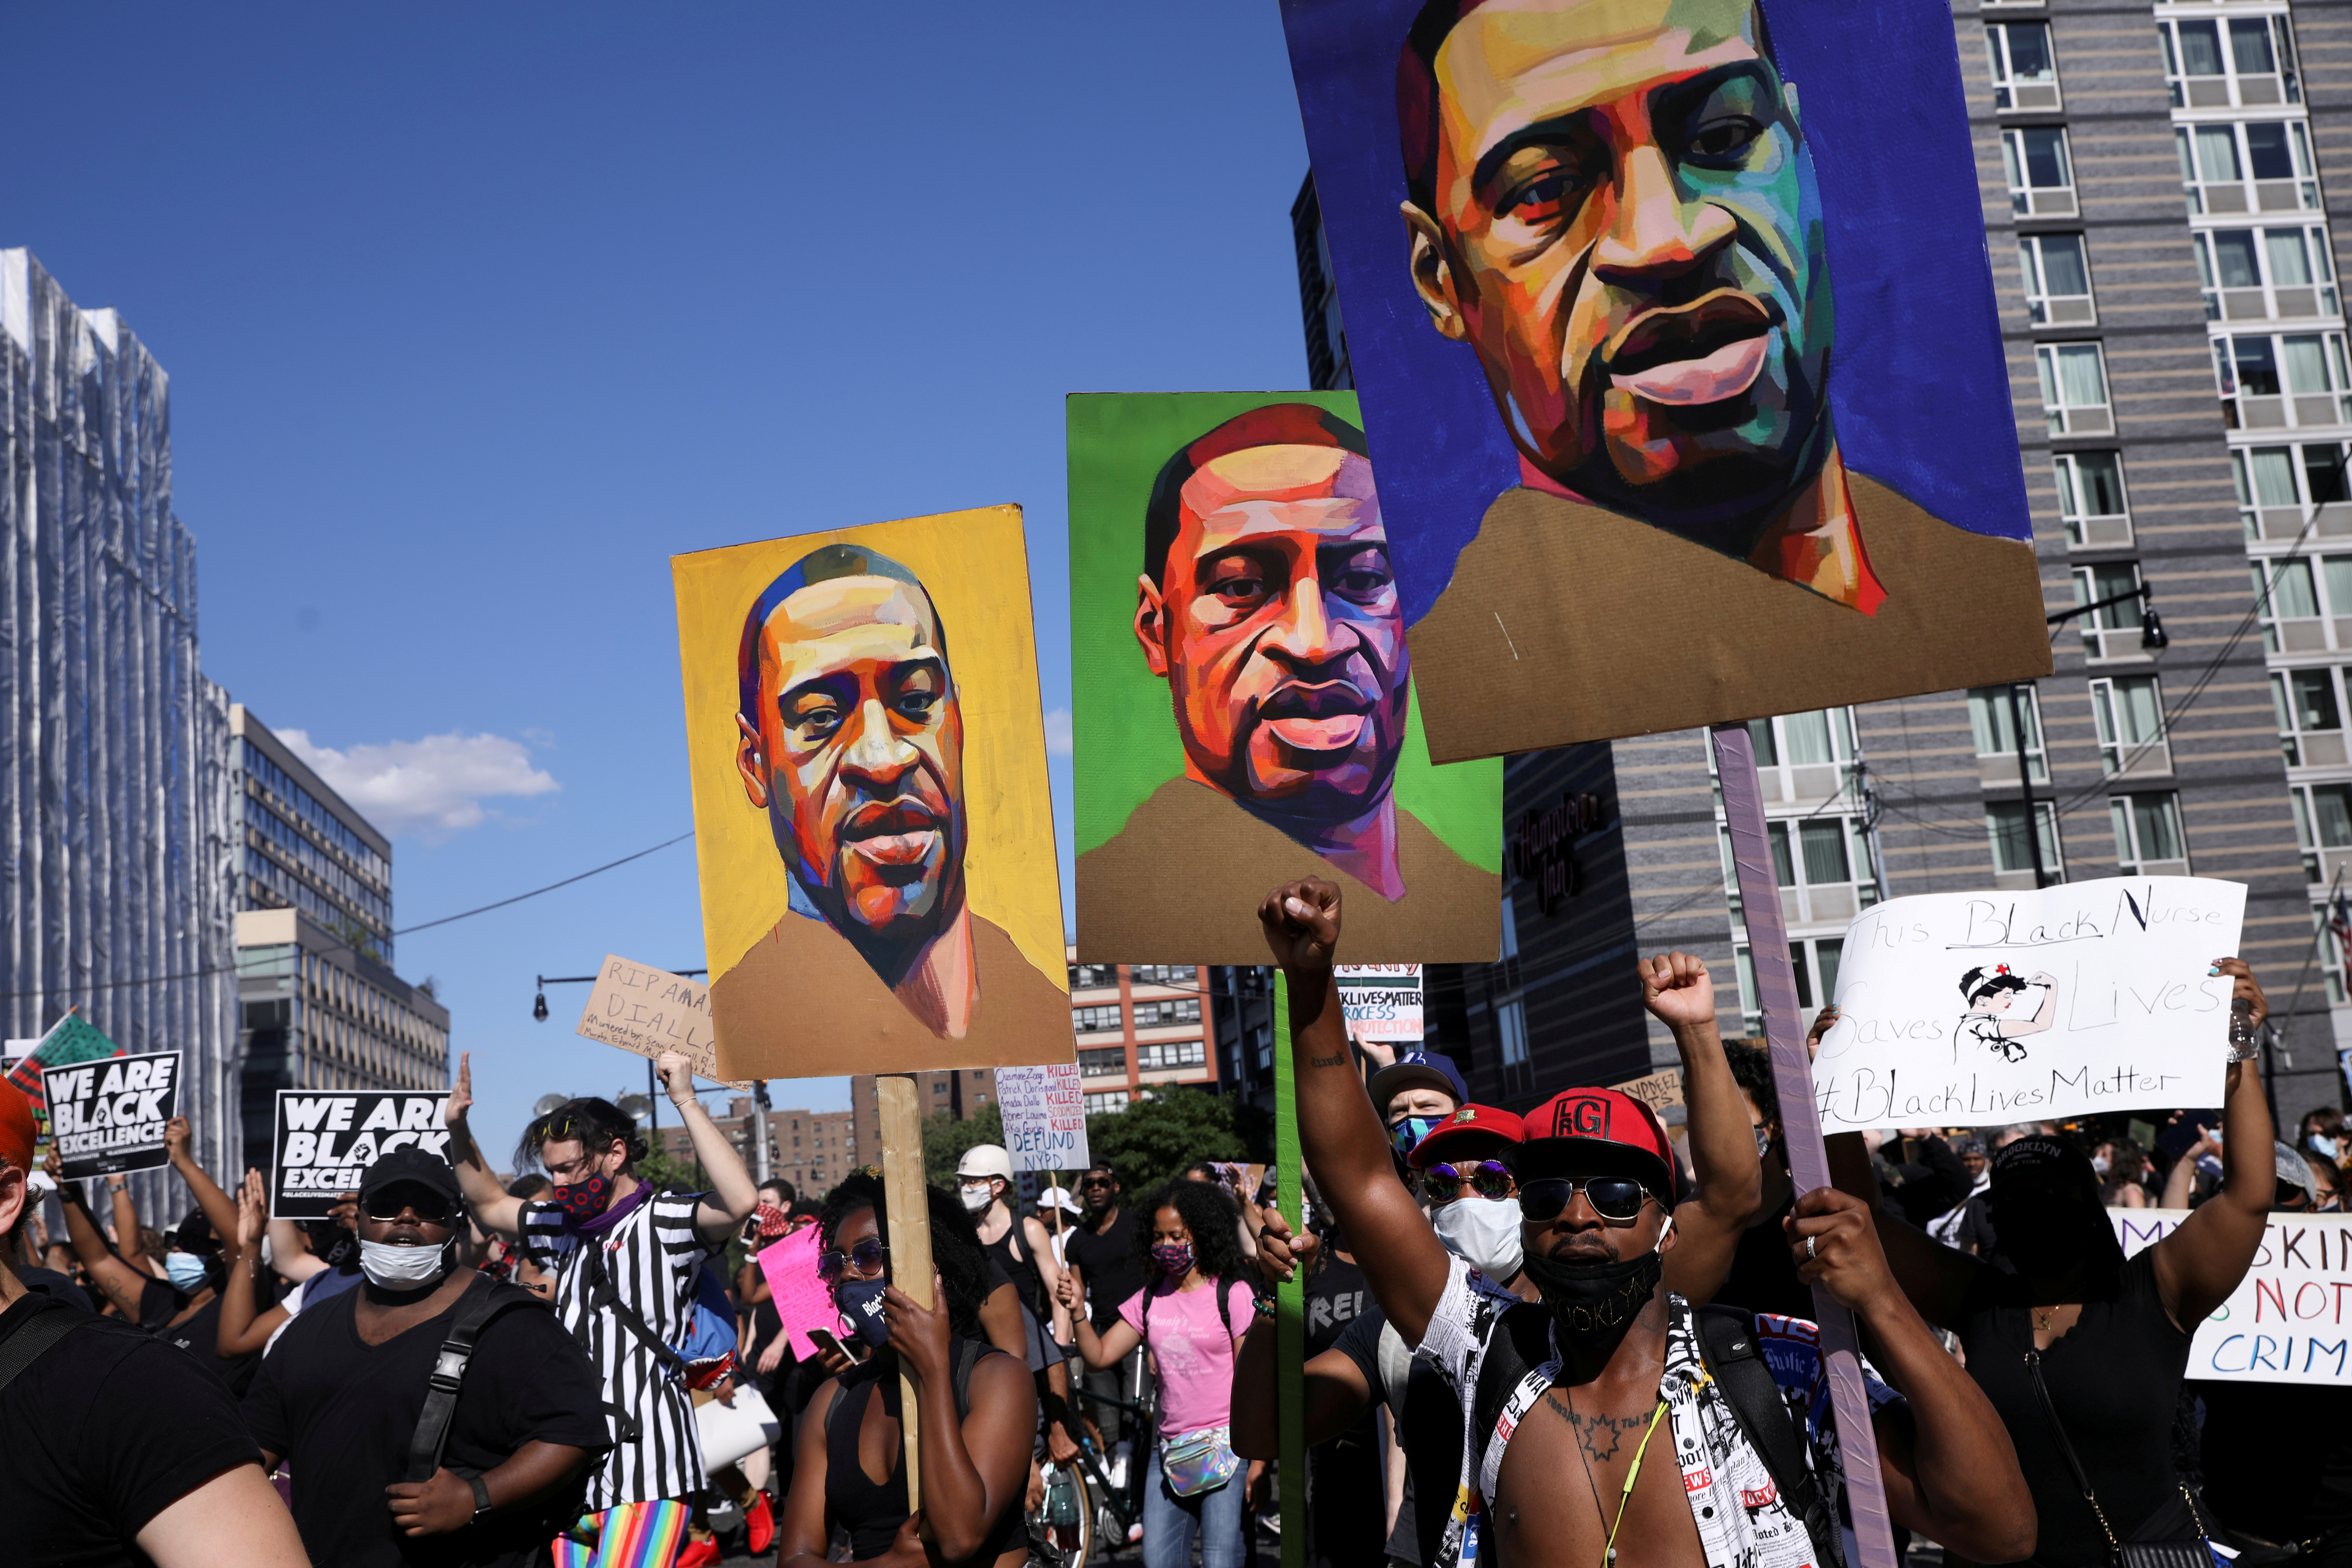 FOTO DE ARCHIVO: Manifestantes sostienen pancartas con una imagen del rostro de George Floyd durante una protesta contra la brutalidad policial y la desigualdad racial en Brooklyn, Nueva York (REUTERS/Caitlin Ochs)